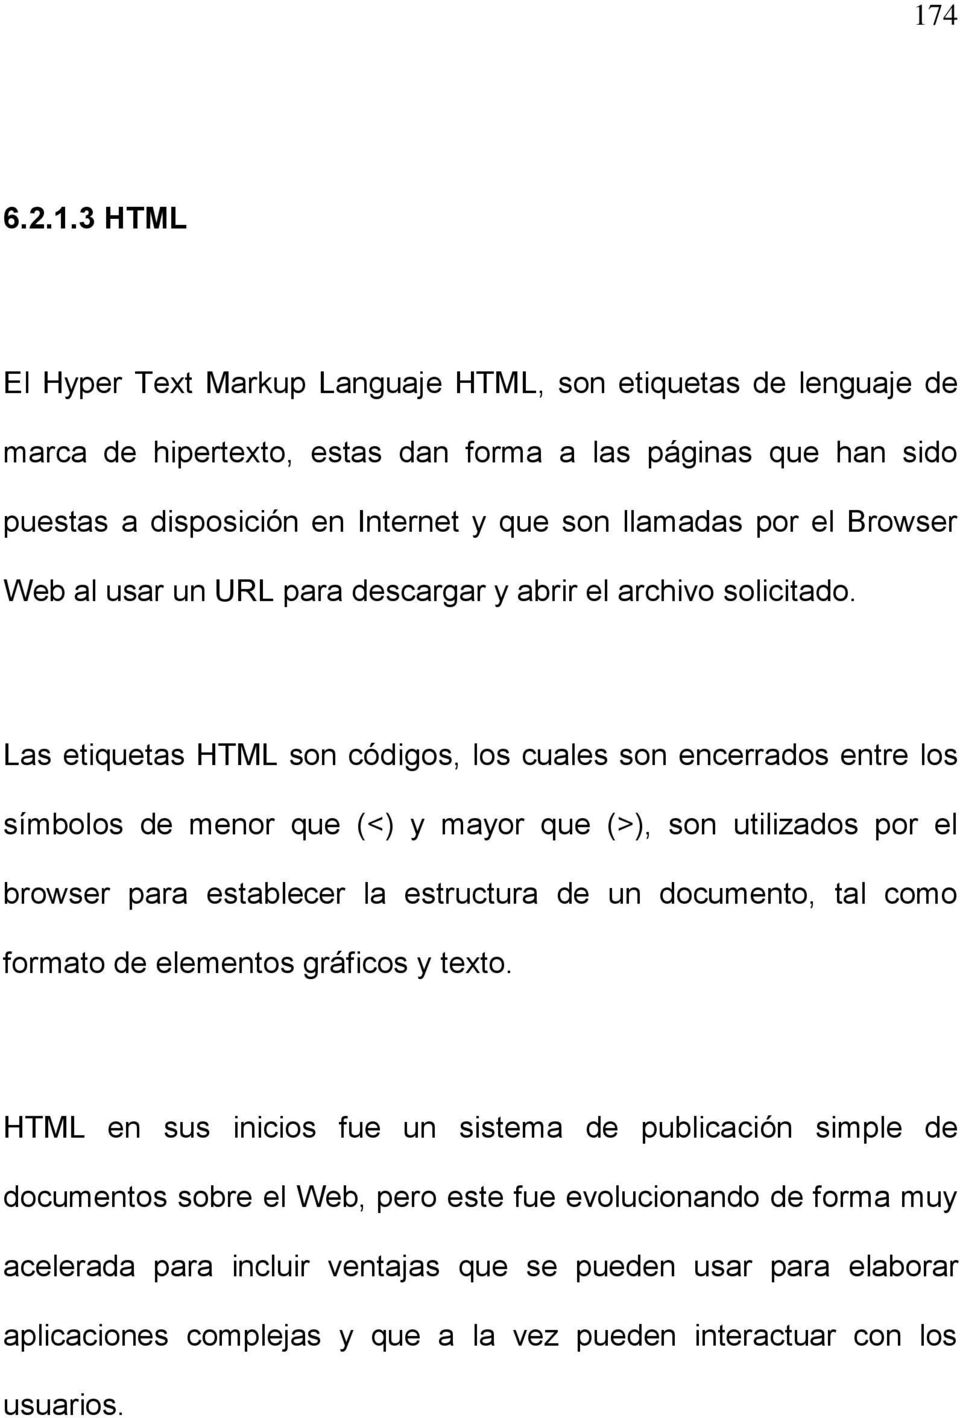 Las etiquetas HTML son códigos, los cuales son encerrados entre los símbolos de menor que (<) y mayor que (>), son utilizados por el browser para establecer la estructura de un documento, tal